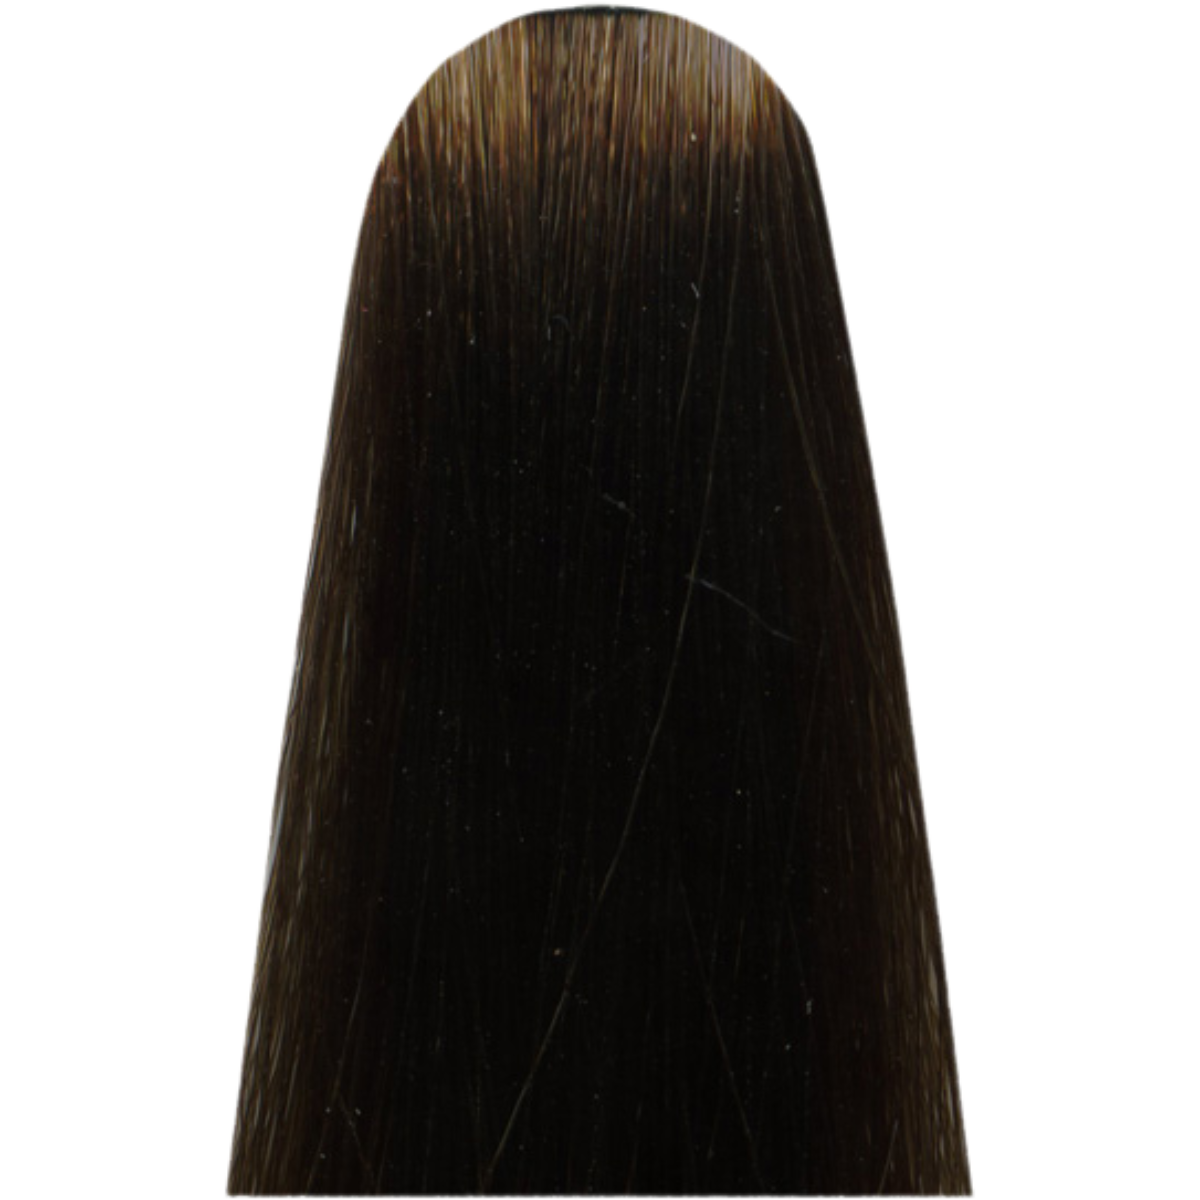 צבע שיער 6 CC DARK BLONDE בסיסי FUNDAMENTAL מג`ירל MAJIREL COOL COVER צבע לשיער לוריאל 50 גרם